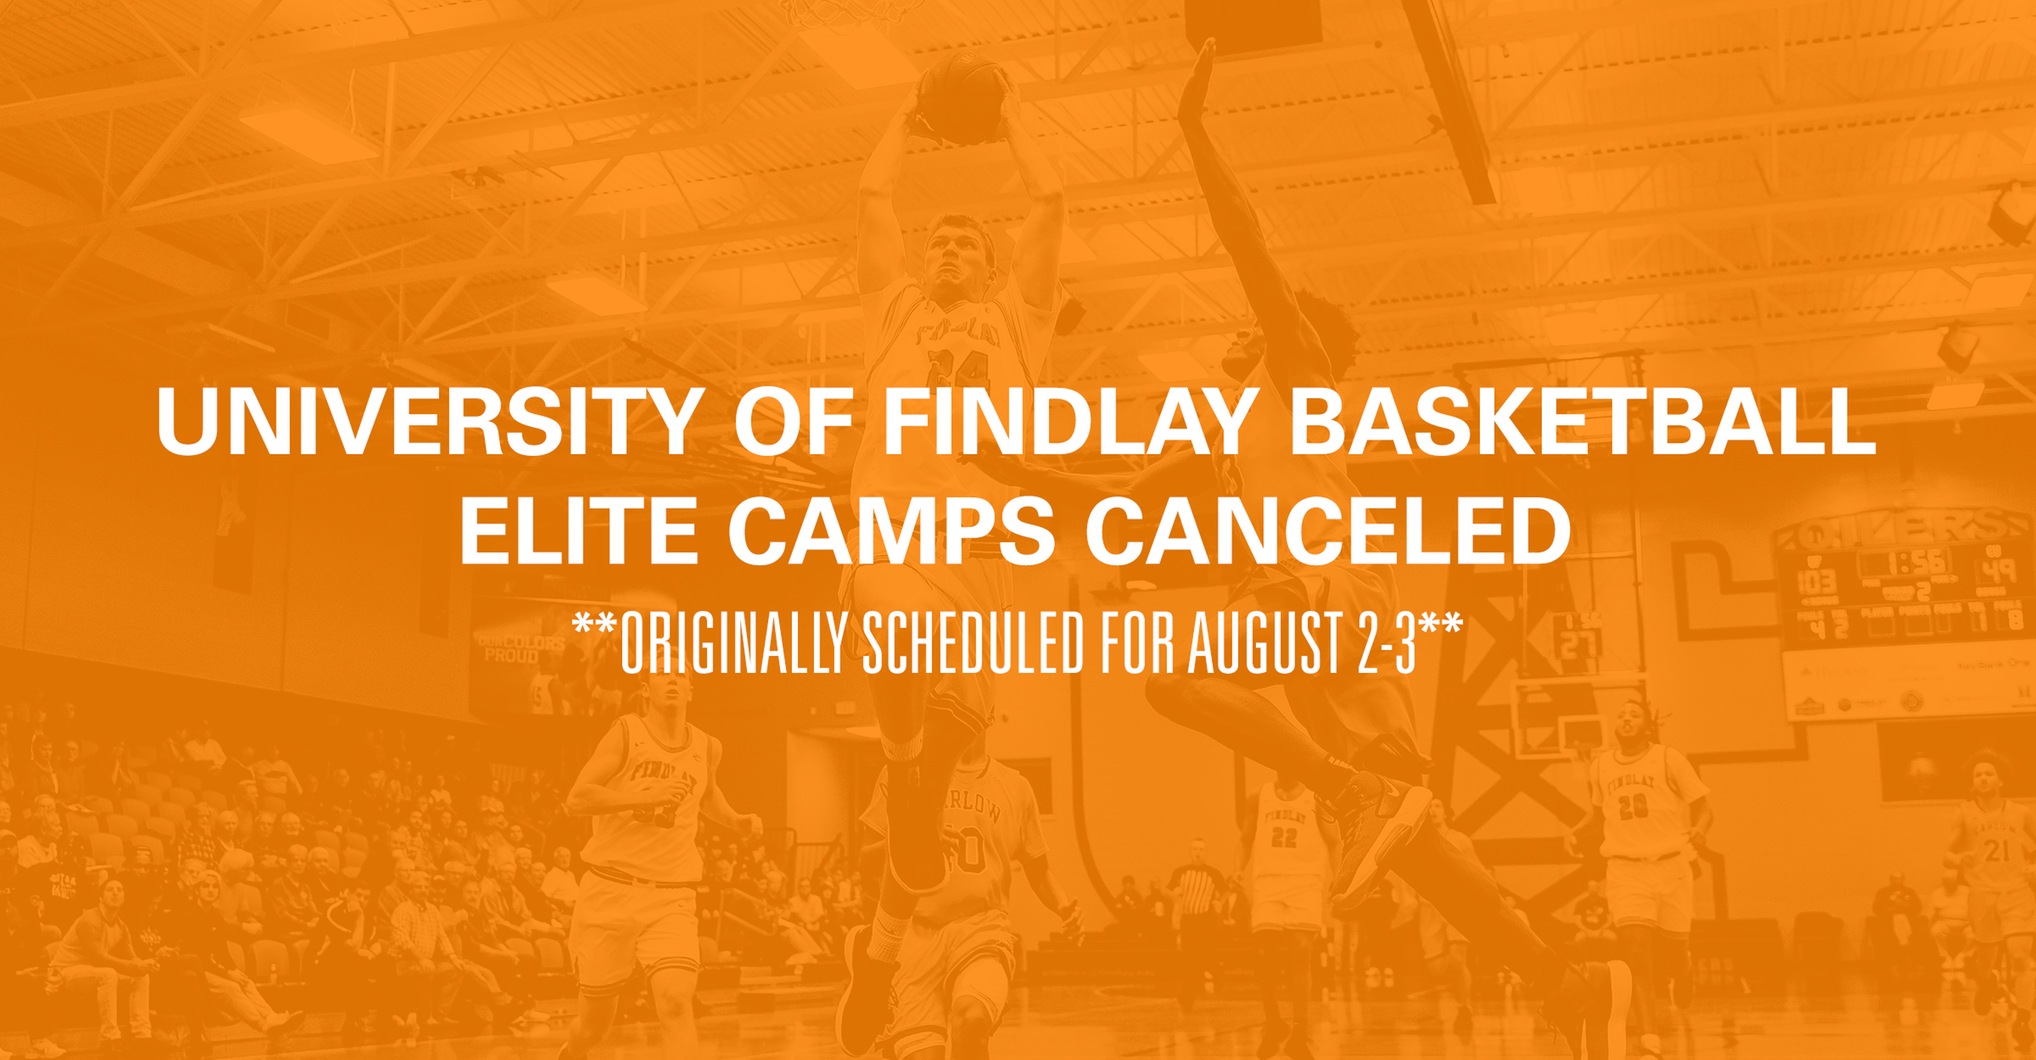 Elite Camps Canceled